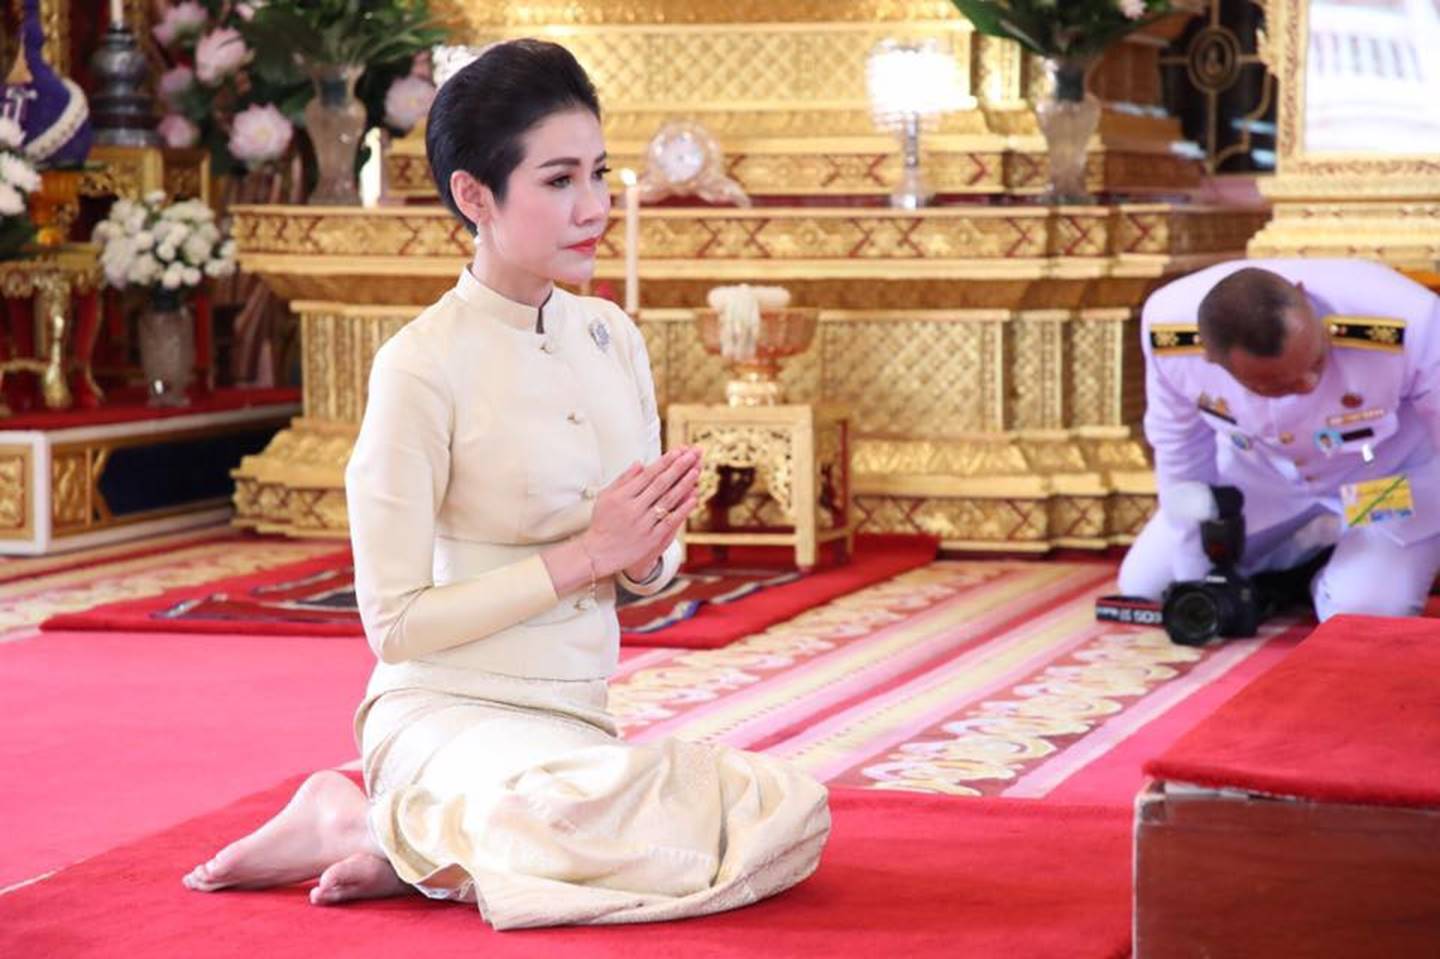 Hoàng quý phi Thái Lan thực hiện nhiệm vụ hoàng gia đầu tiên trên cương vị mới với phong thái gây ngỡ ngàng-5